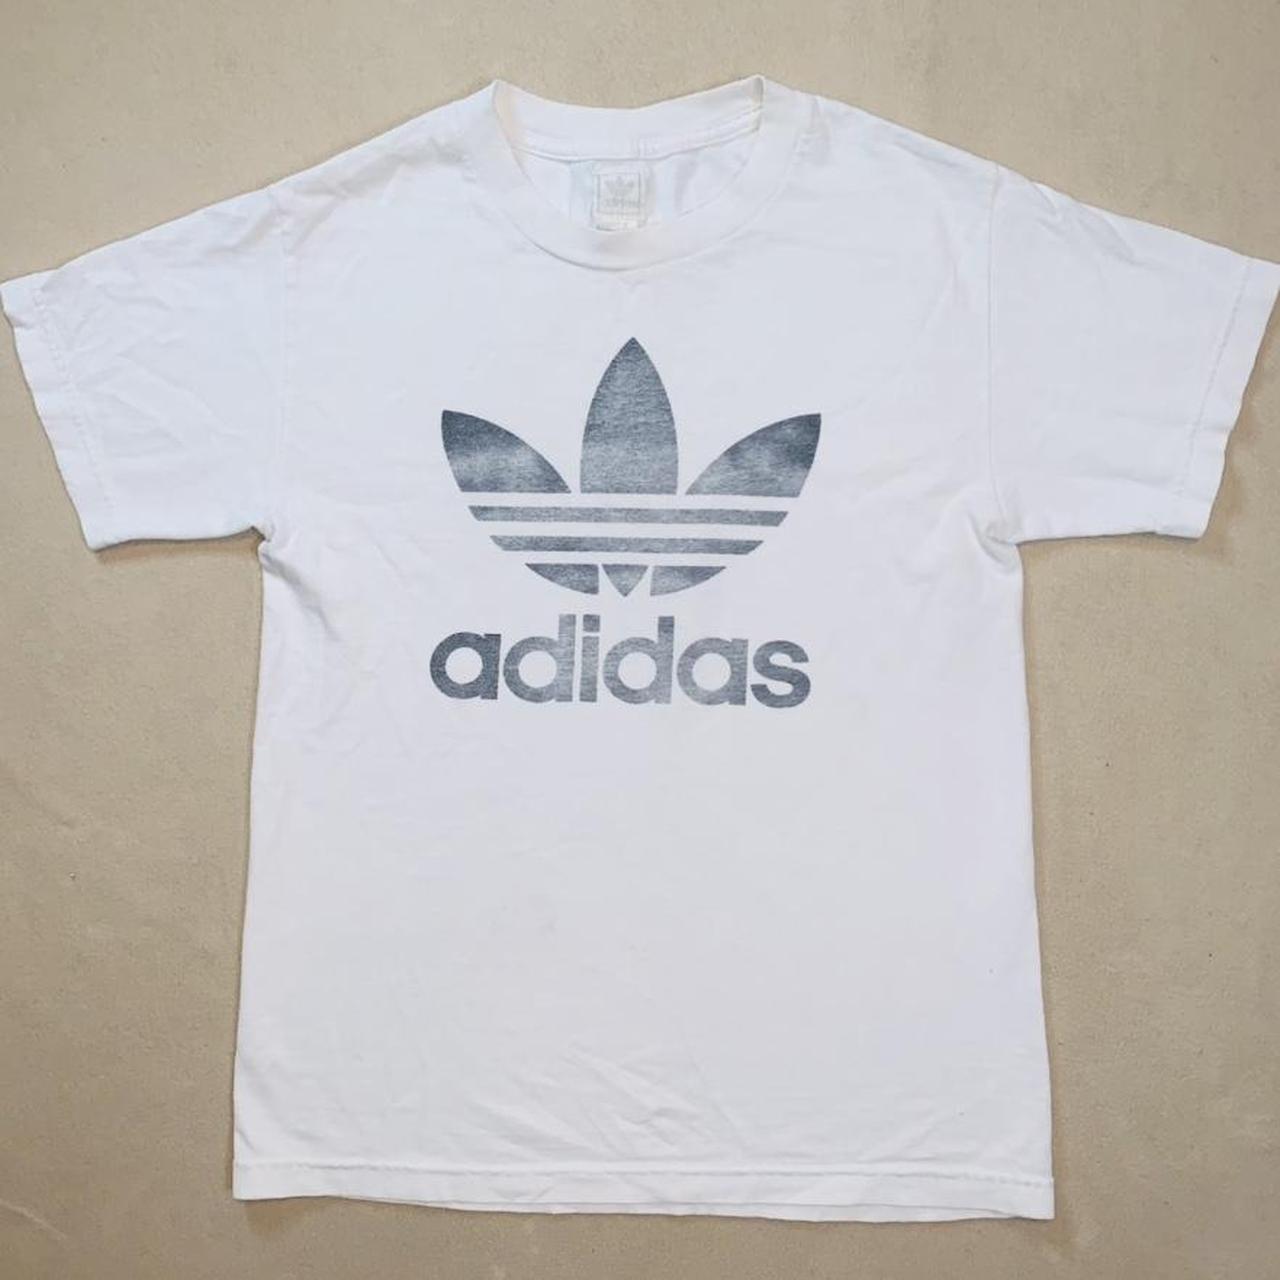 Vintage Adidas Originals white graphic T-shirt in... - Depop